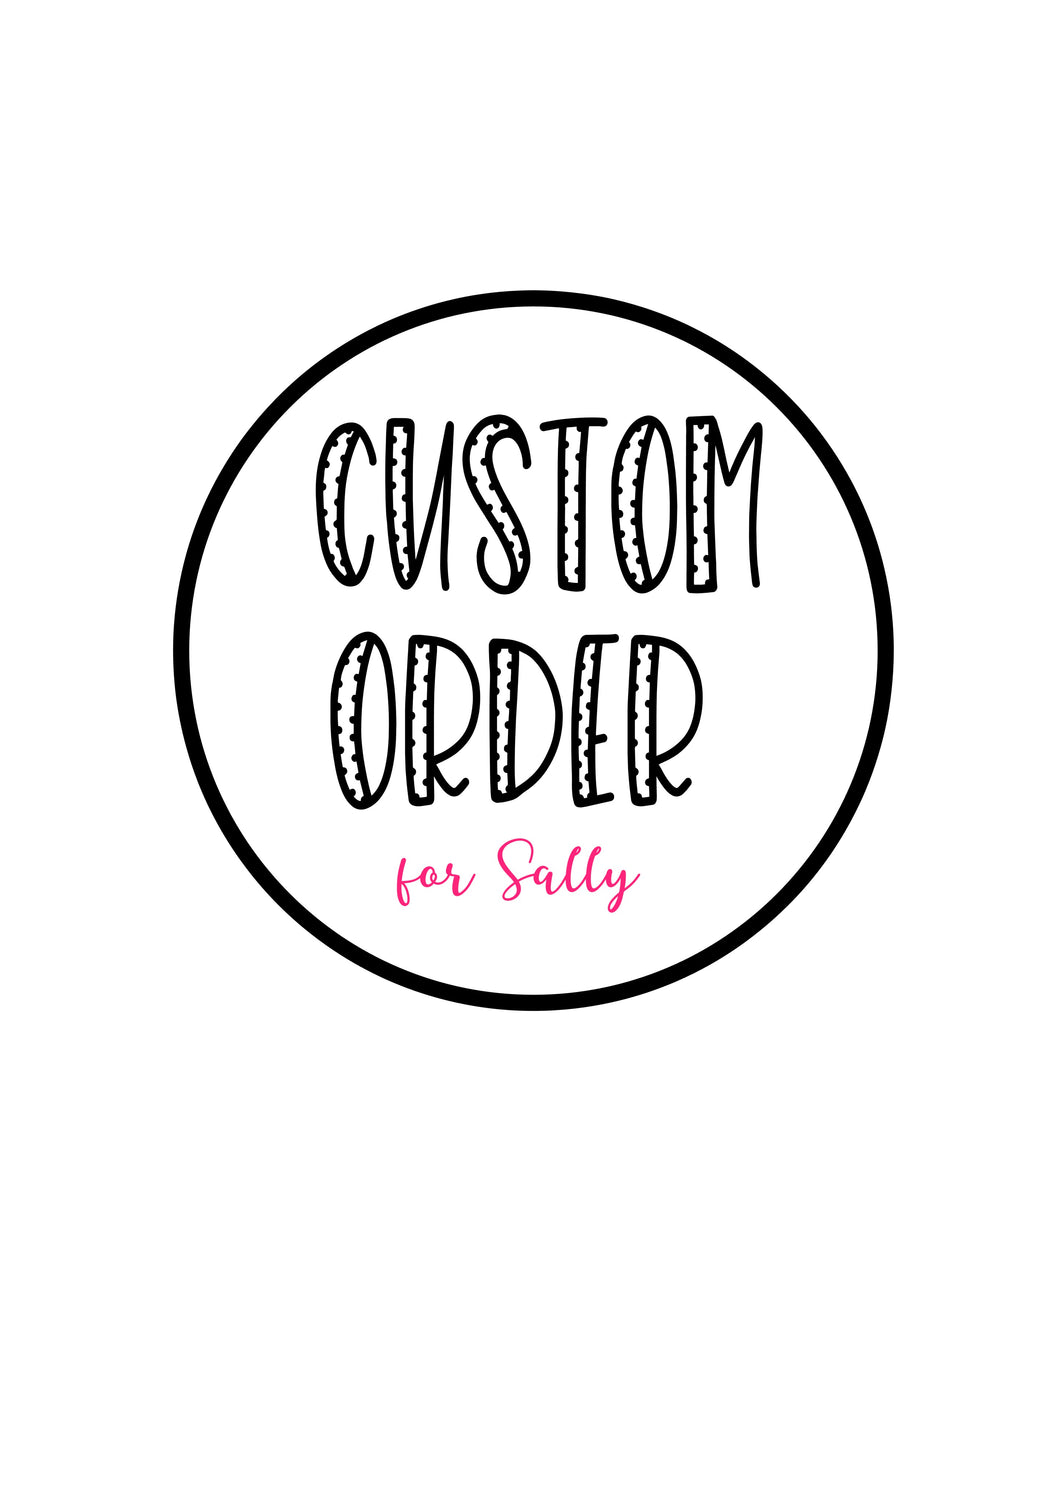 Custom order for Sally